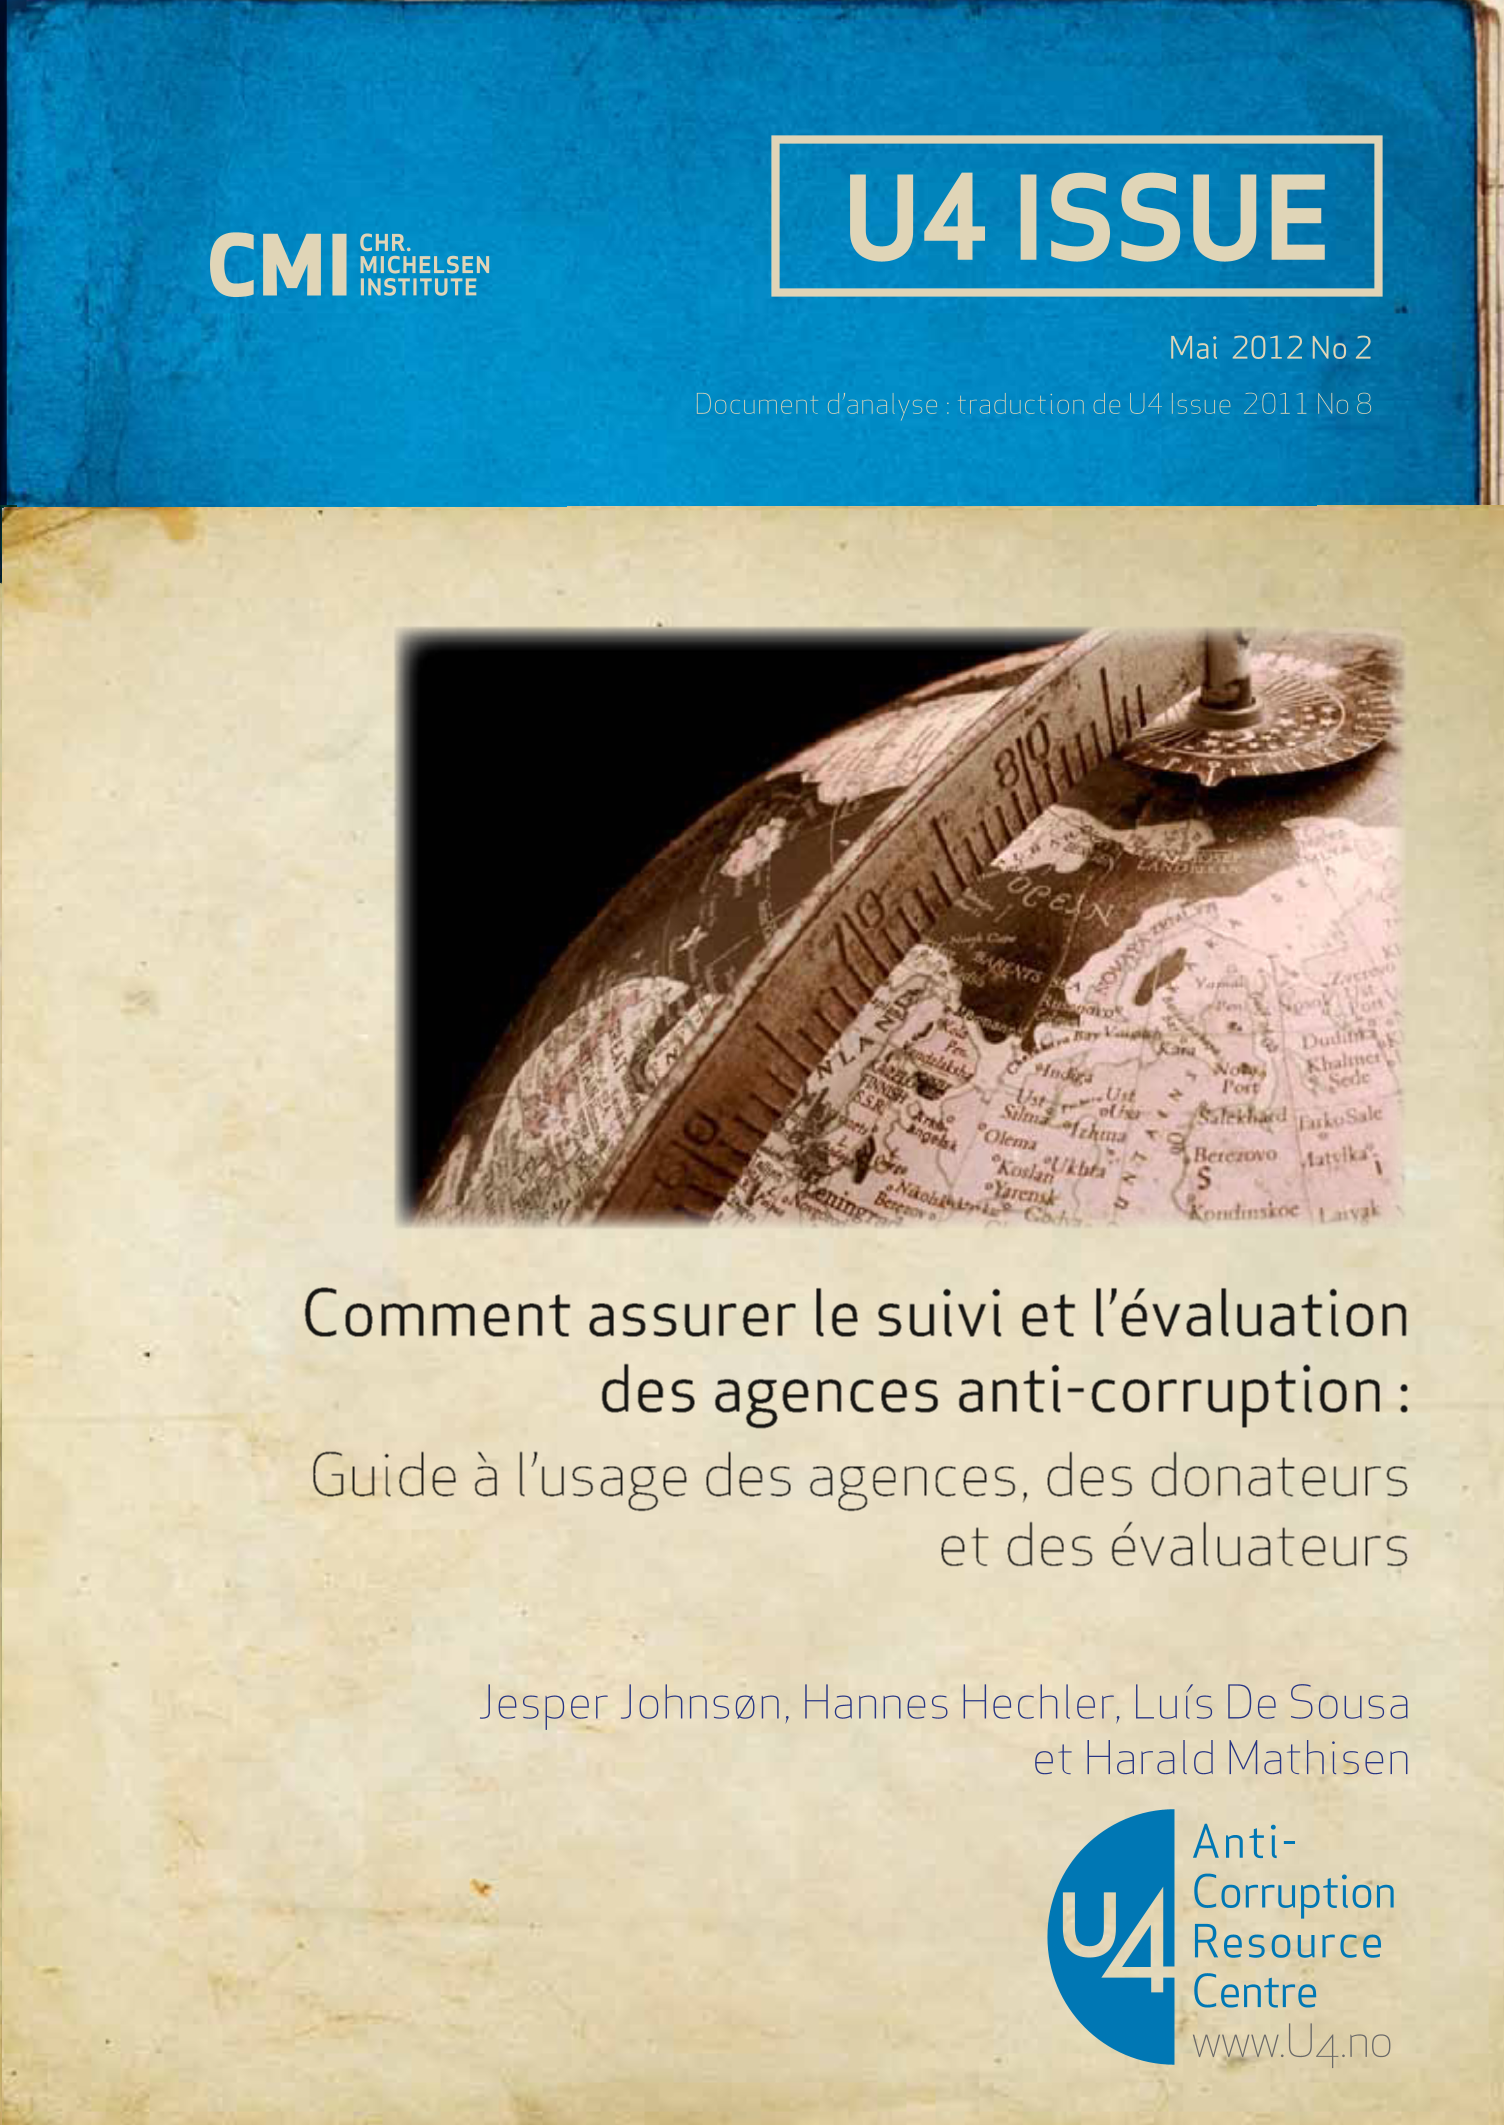 Comment assurer le suivi et l’évaluation des agences anti-corruption : Guide à l’usage des agences, des donateurs et des évaluateurs